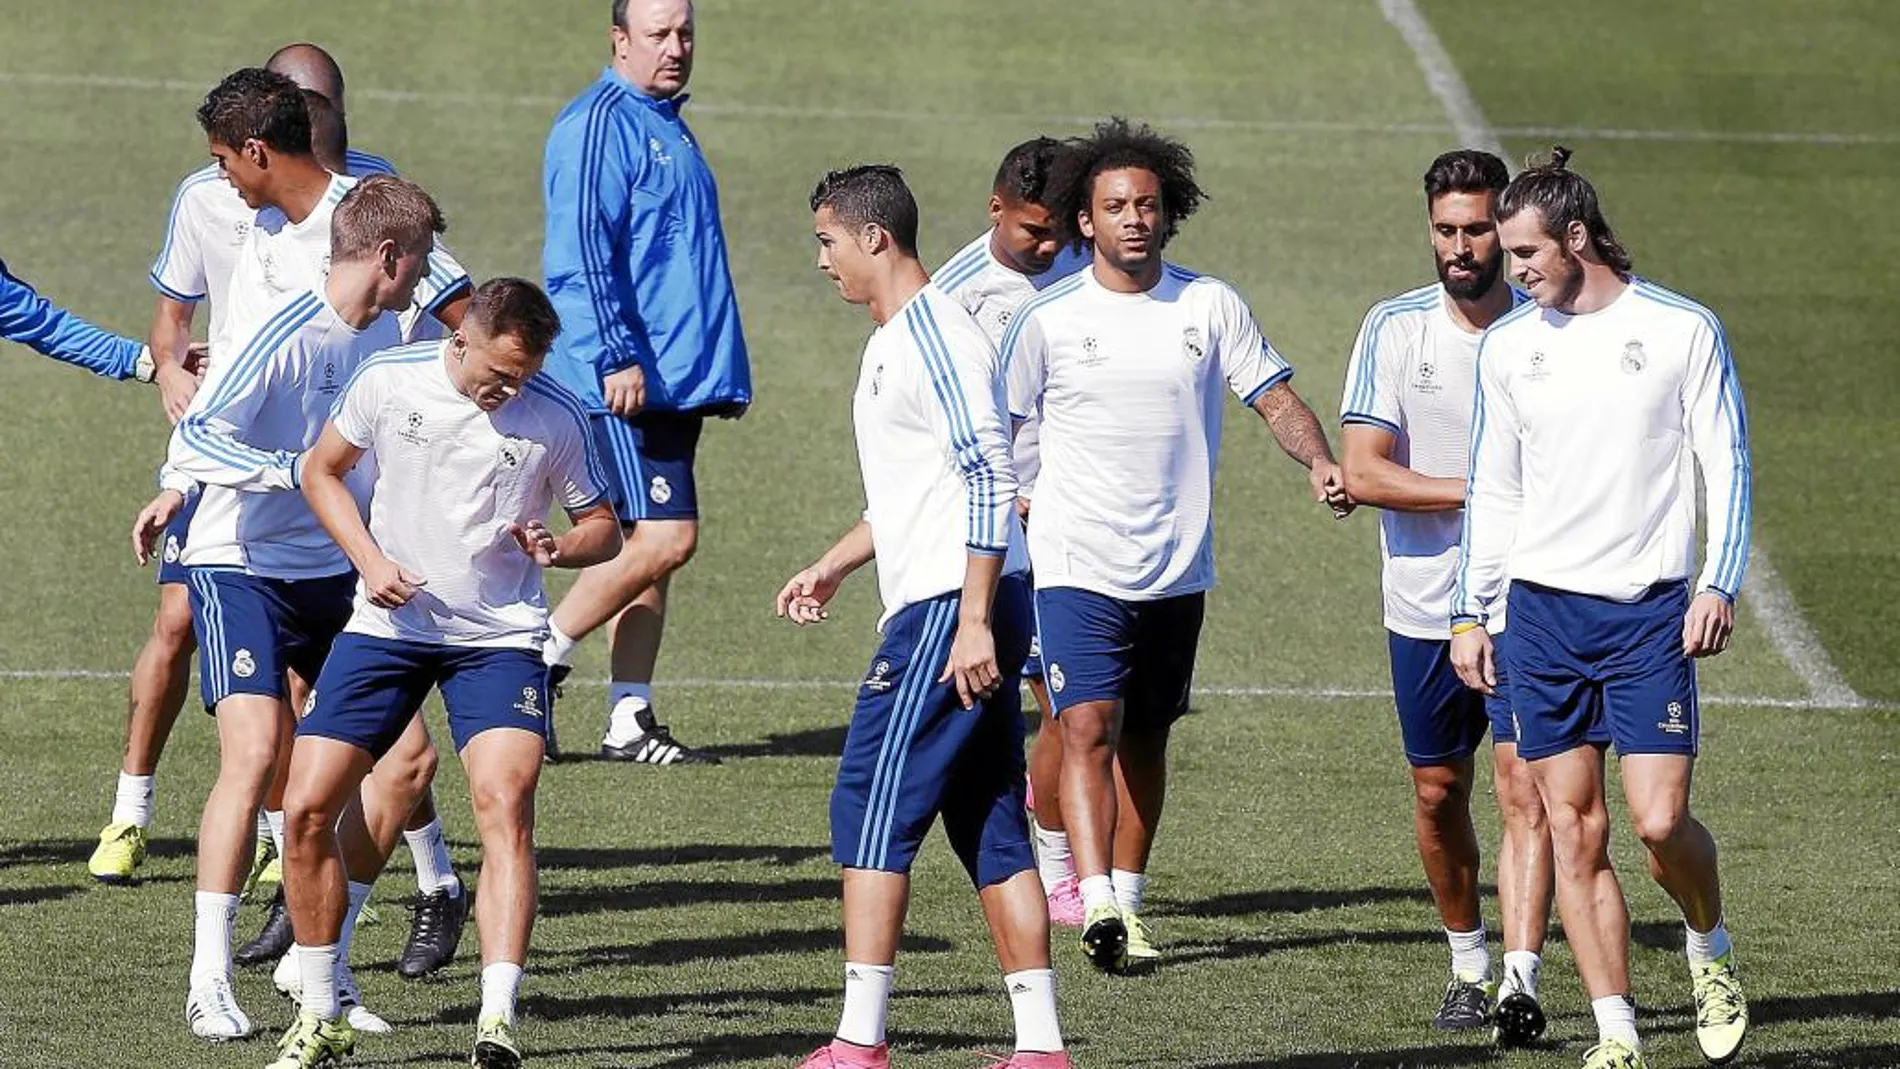 Benítez observa el entrenamiento de los jugadores ayer: Cherysev, Ronaldo y Bale en primera línea